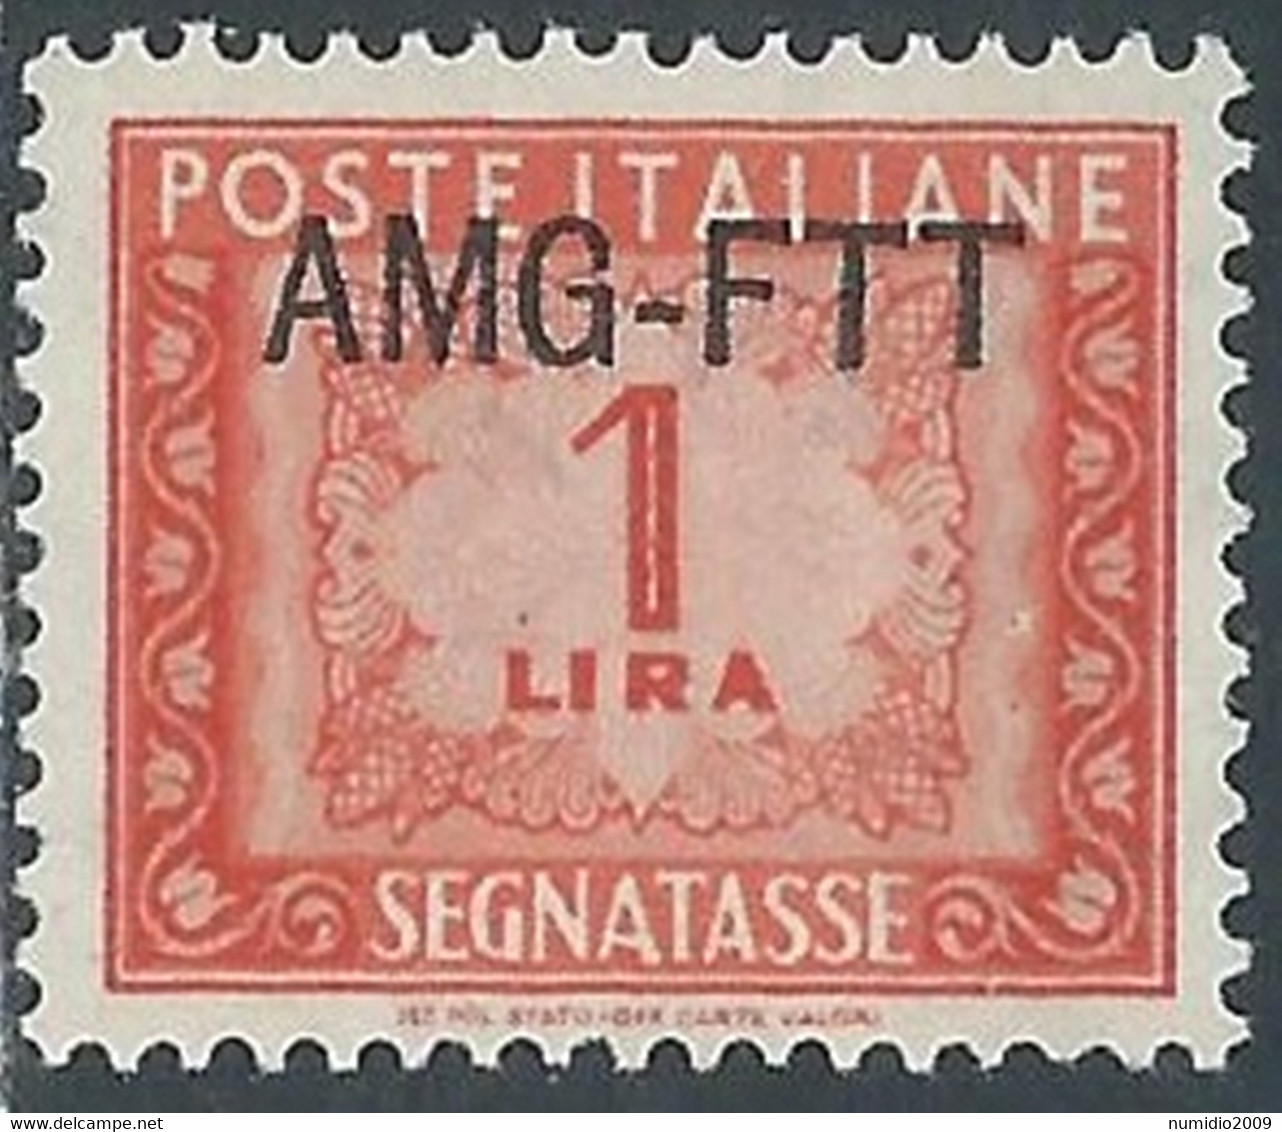 1949-54 TRIESTE A SEGNATASSE 1 LIRA MNH ** - RE8-4 - Portomarken